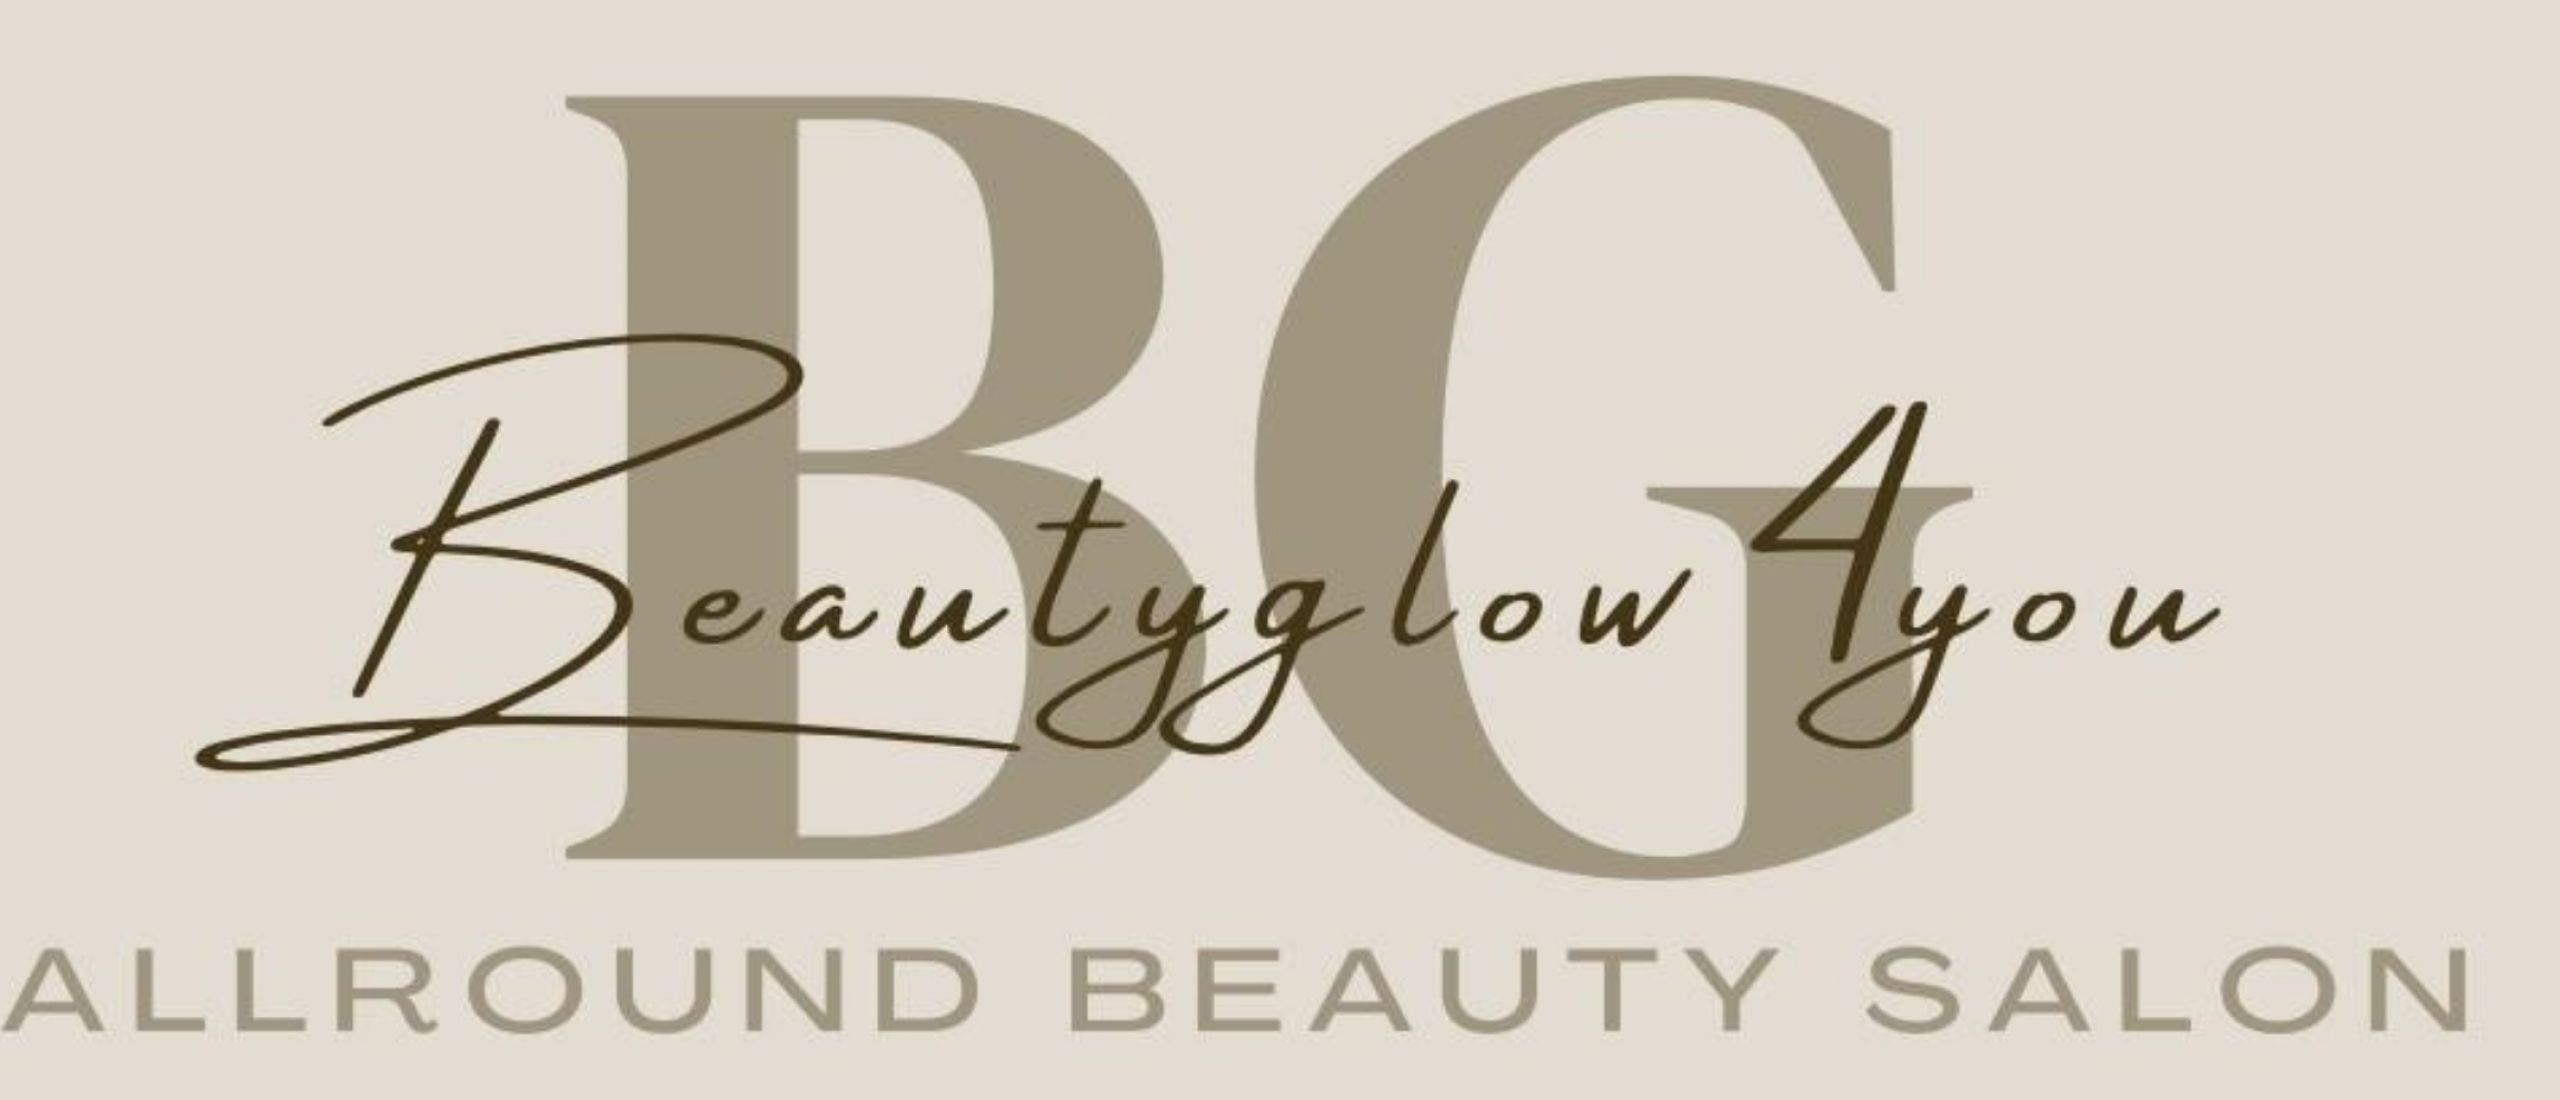 Beautyglow4you: Dé Salon voor Wenkbrauwen, Gezichtsbehandelingen en Meer